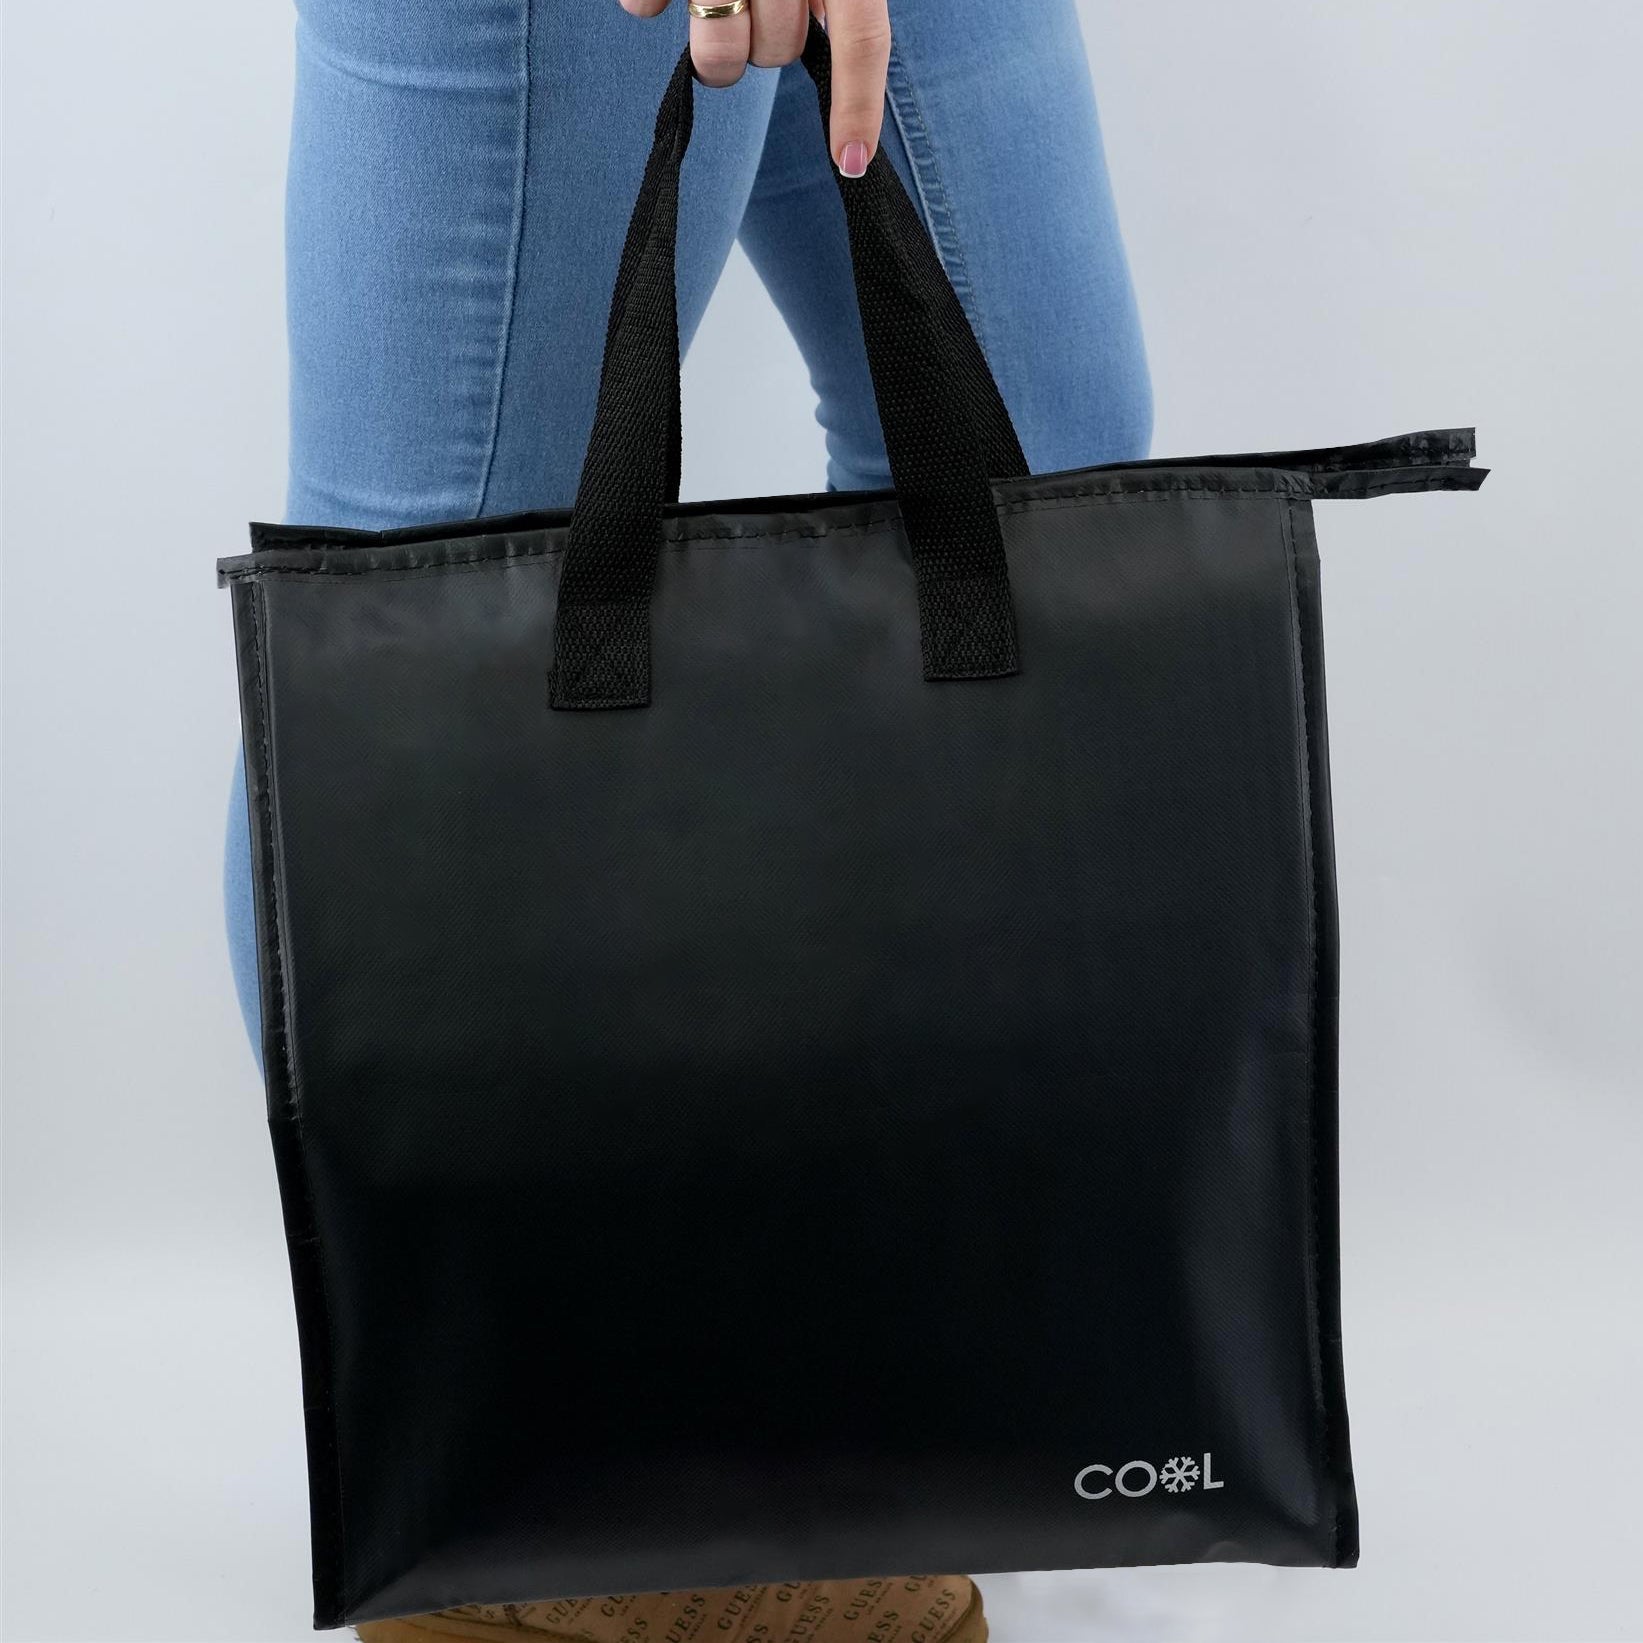 GEEZY Cooling Bag Shopping Cooler Bag